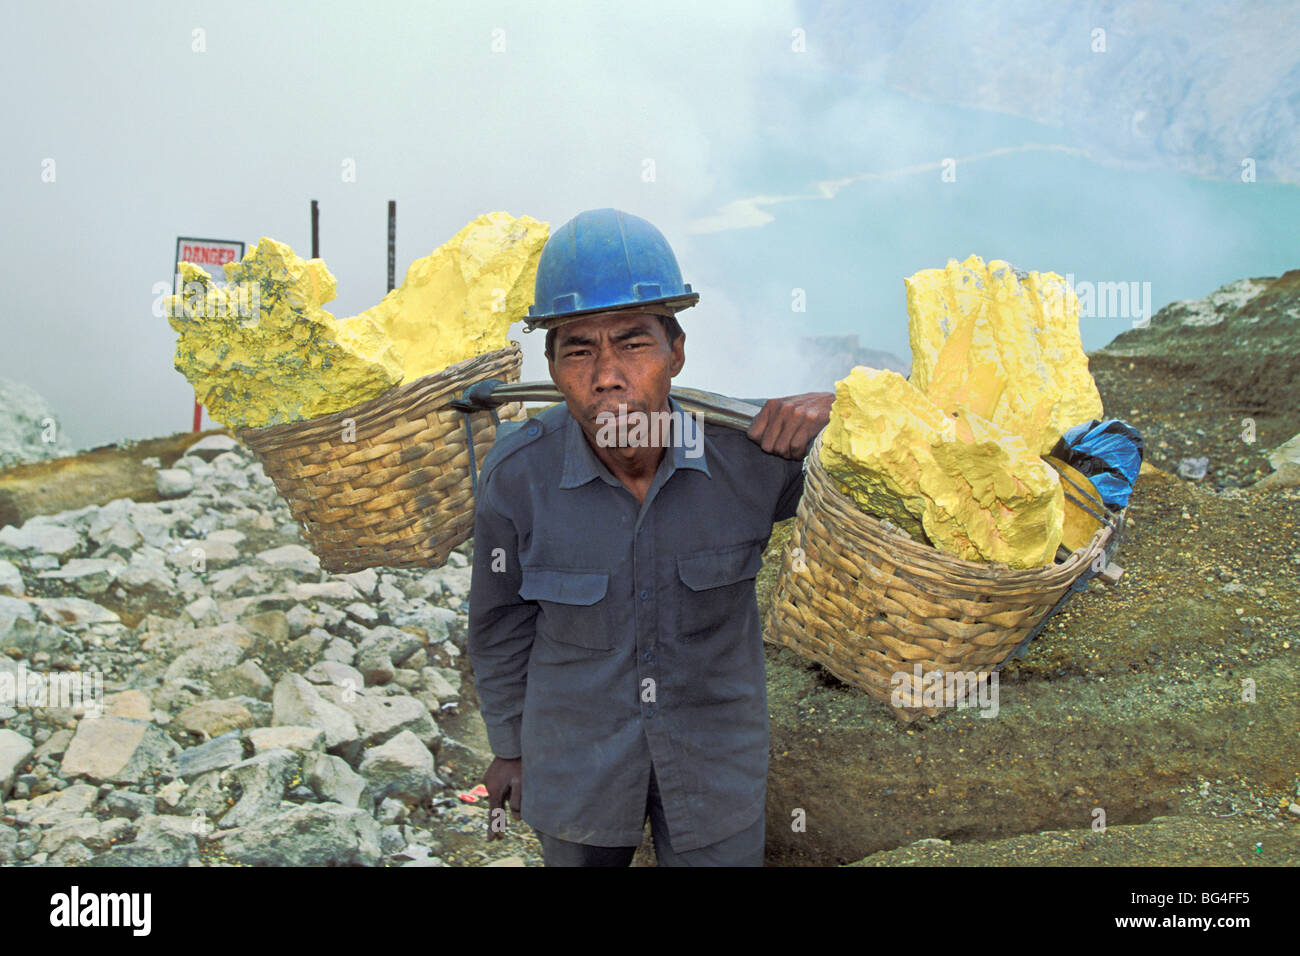 Homme engagé dans l'exploitation minière, de soufre un travail dangereux et de rupture dans le Kawah Ijen, cratère du volcan Ijen, Java Est, Indonésie Banque D'Images